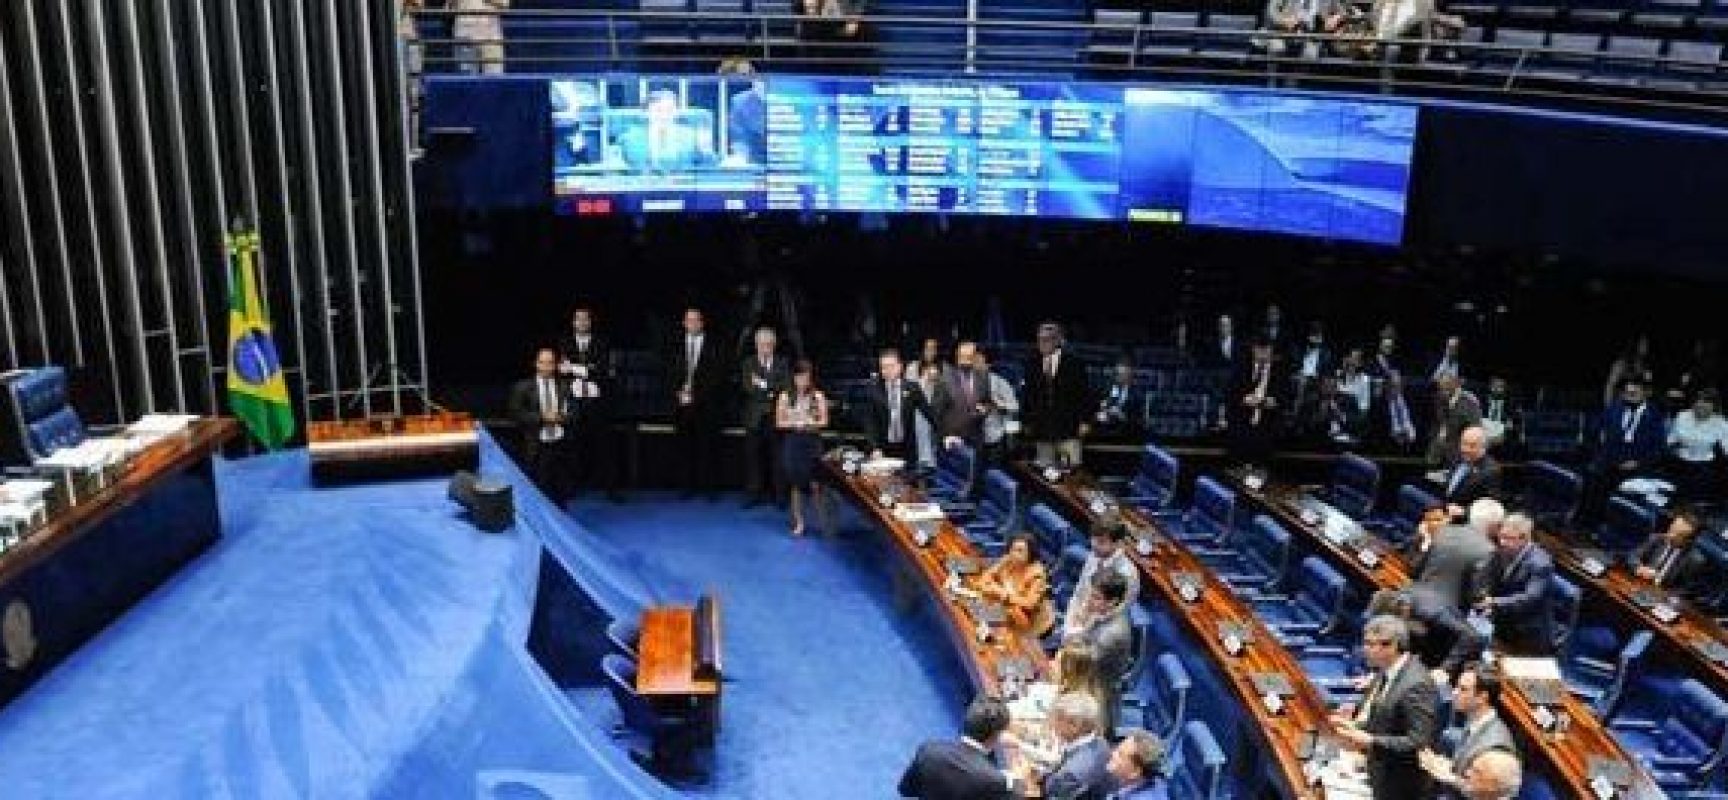 Orçamento para 2019 prevê R$ 13,7 bilhões para emendas parlamentares